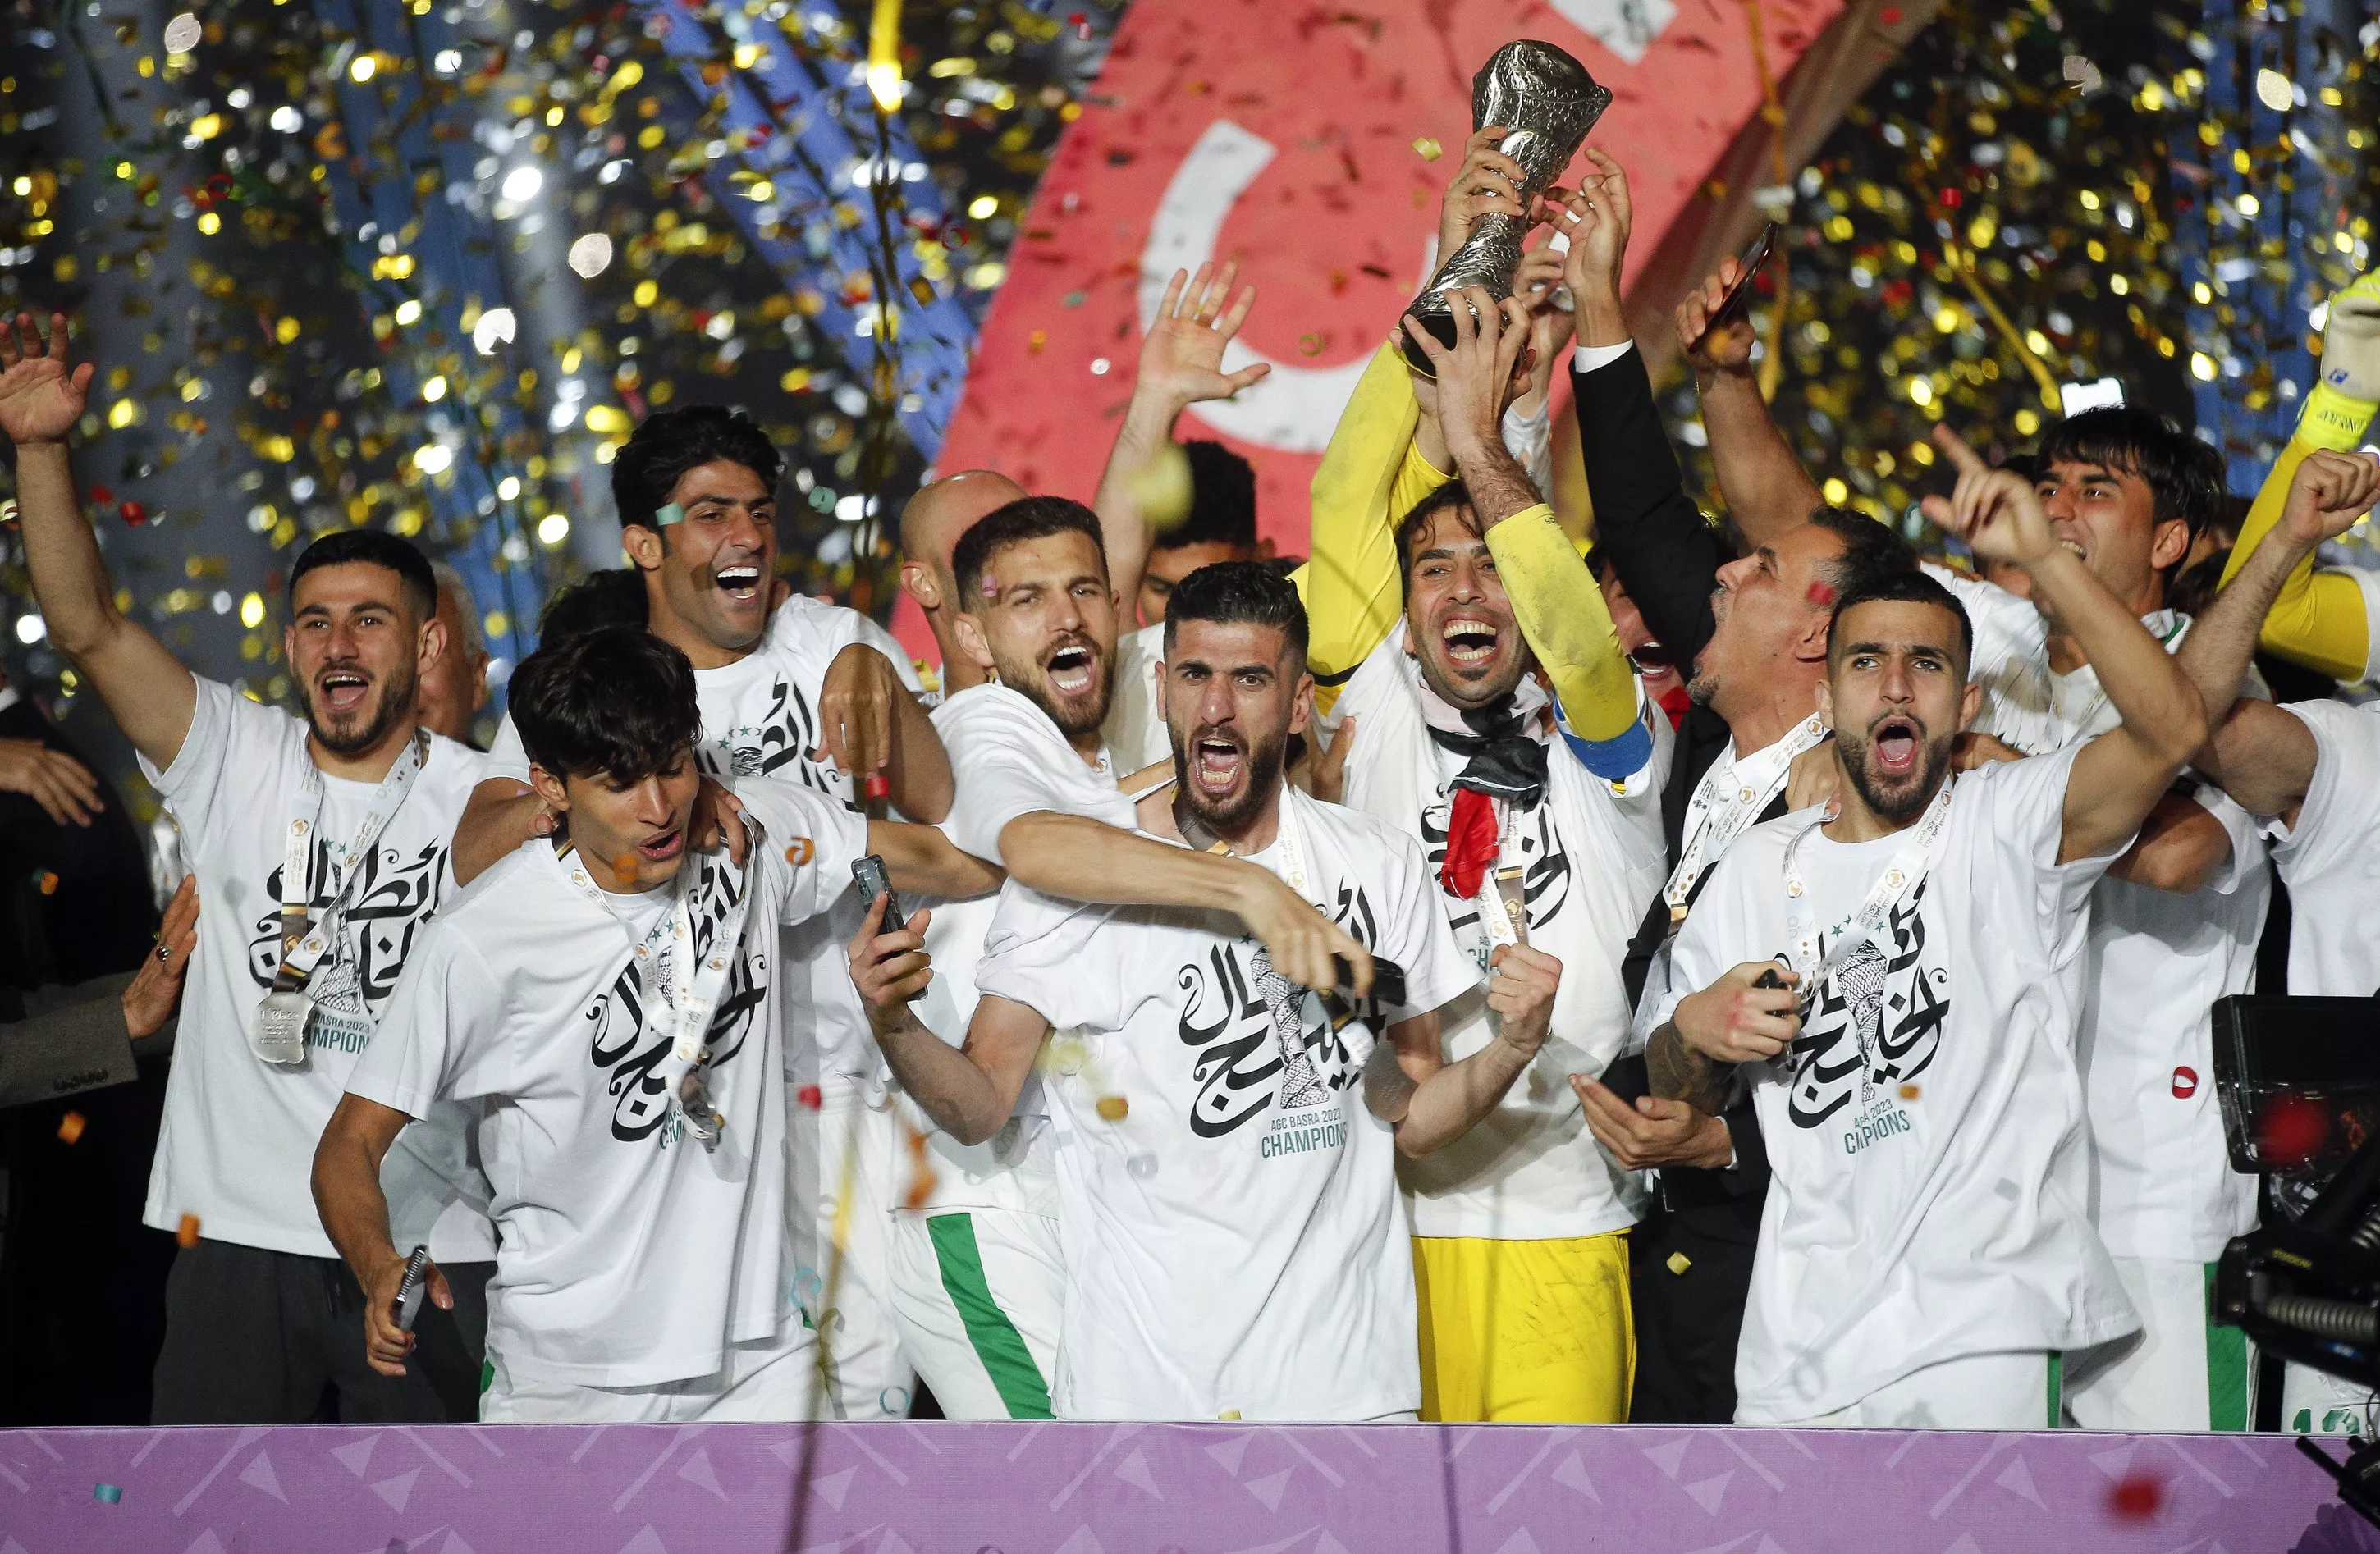 كأس الخليج 25: فوز العراق، مشاركة احلام وماجد المهندس وكل تفاصيل ختام المباراة